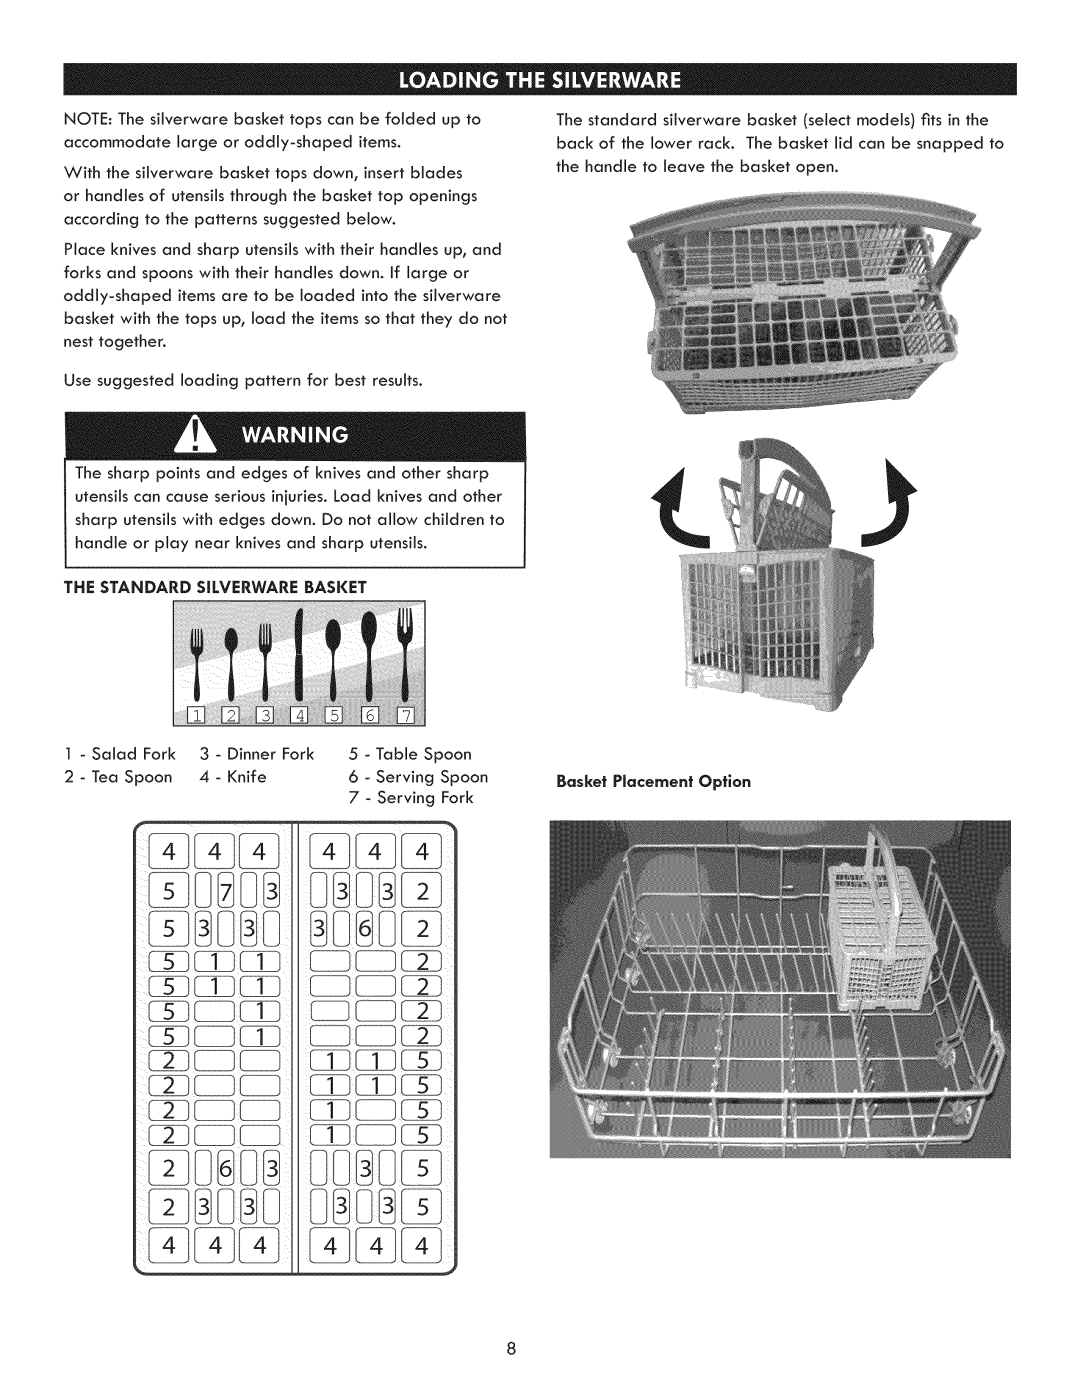 Kenmore 630.7793 manual The Standard Silverware Basket 